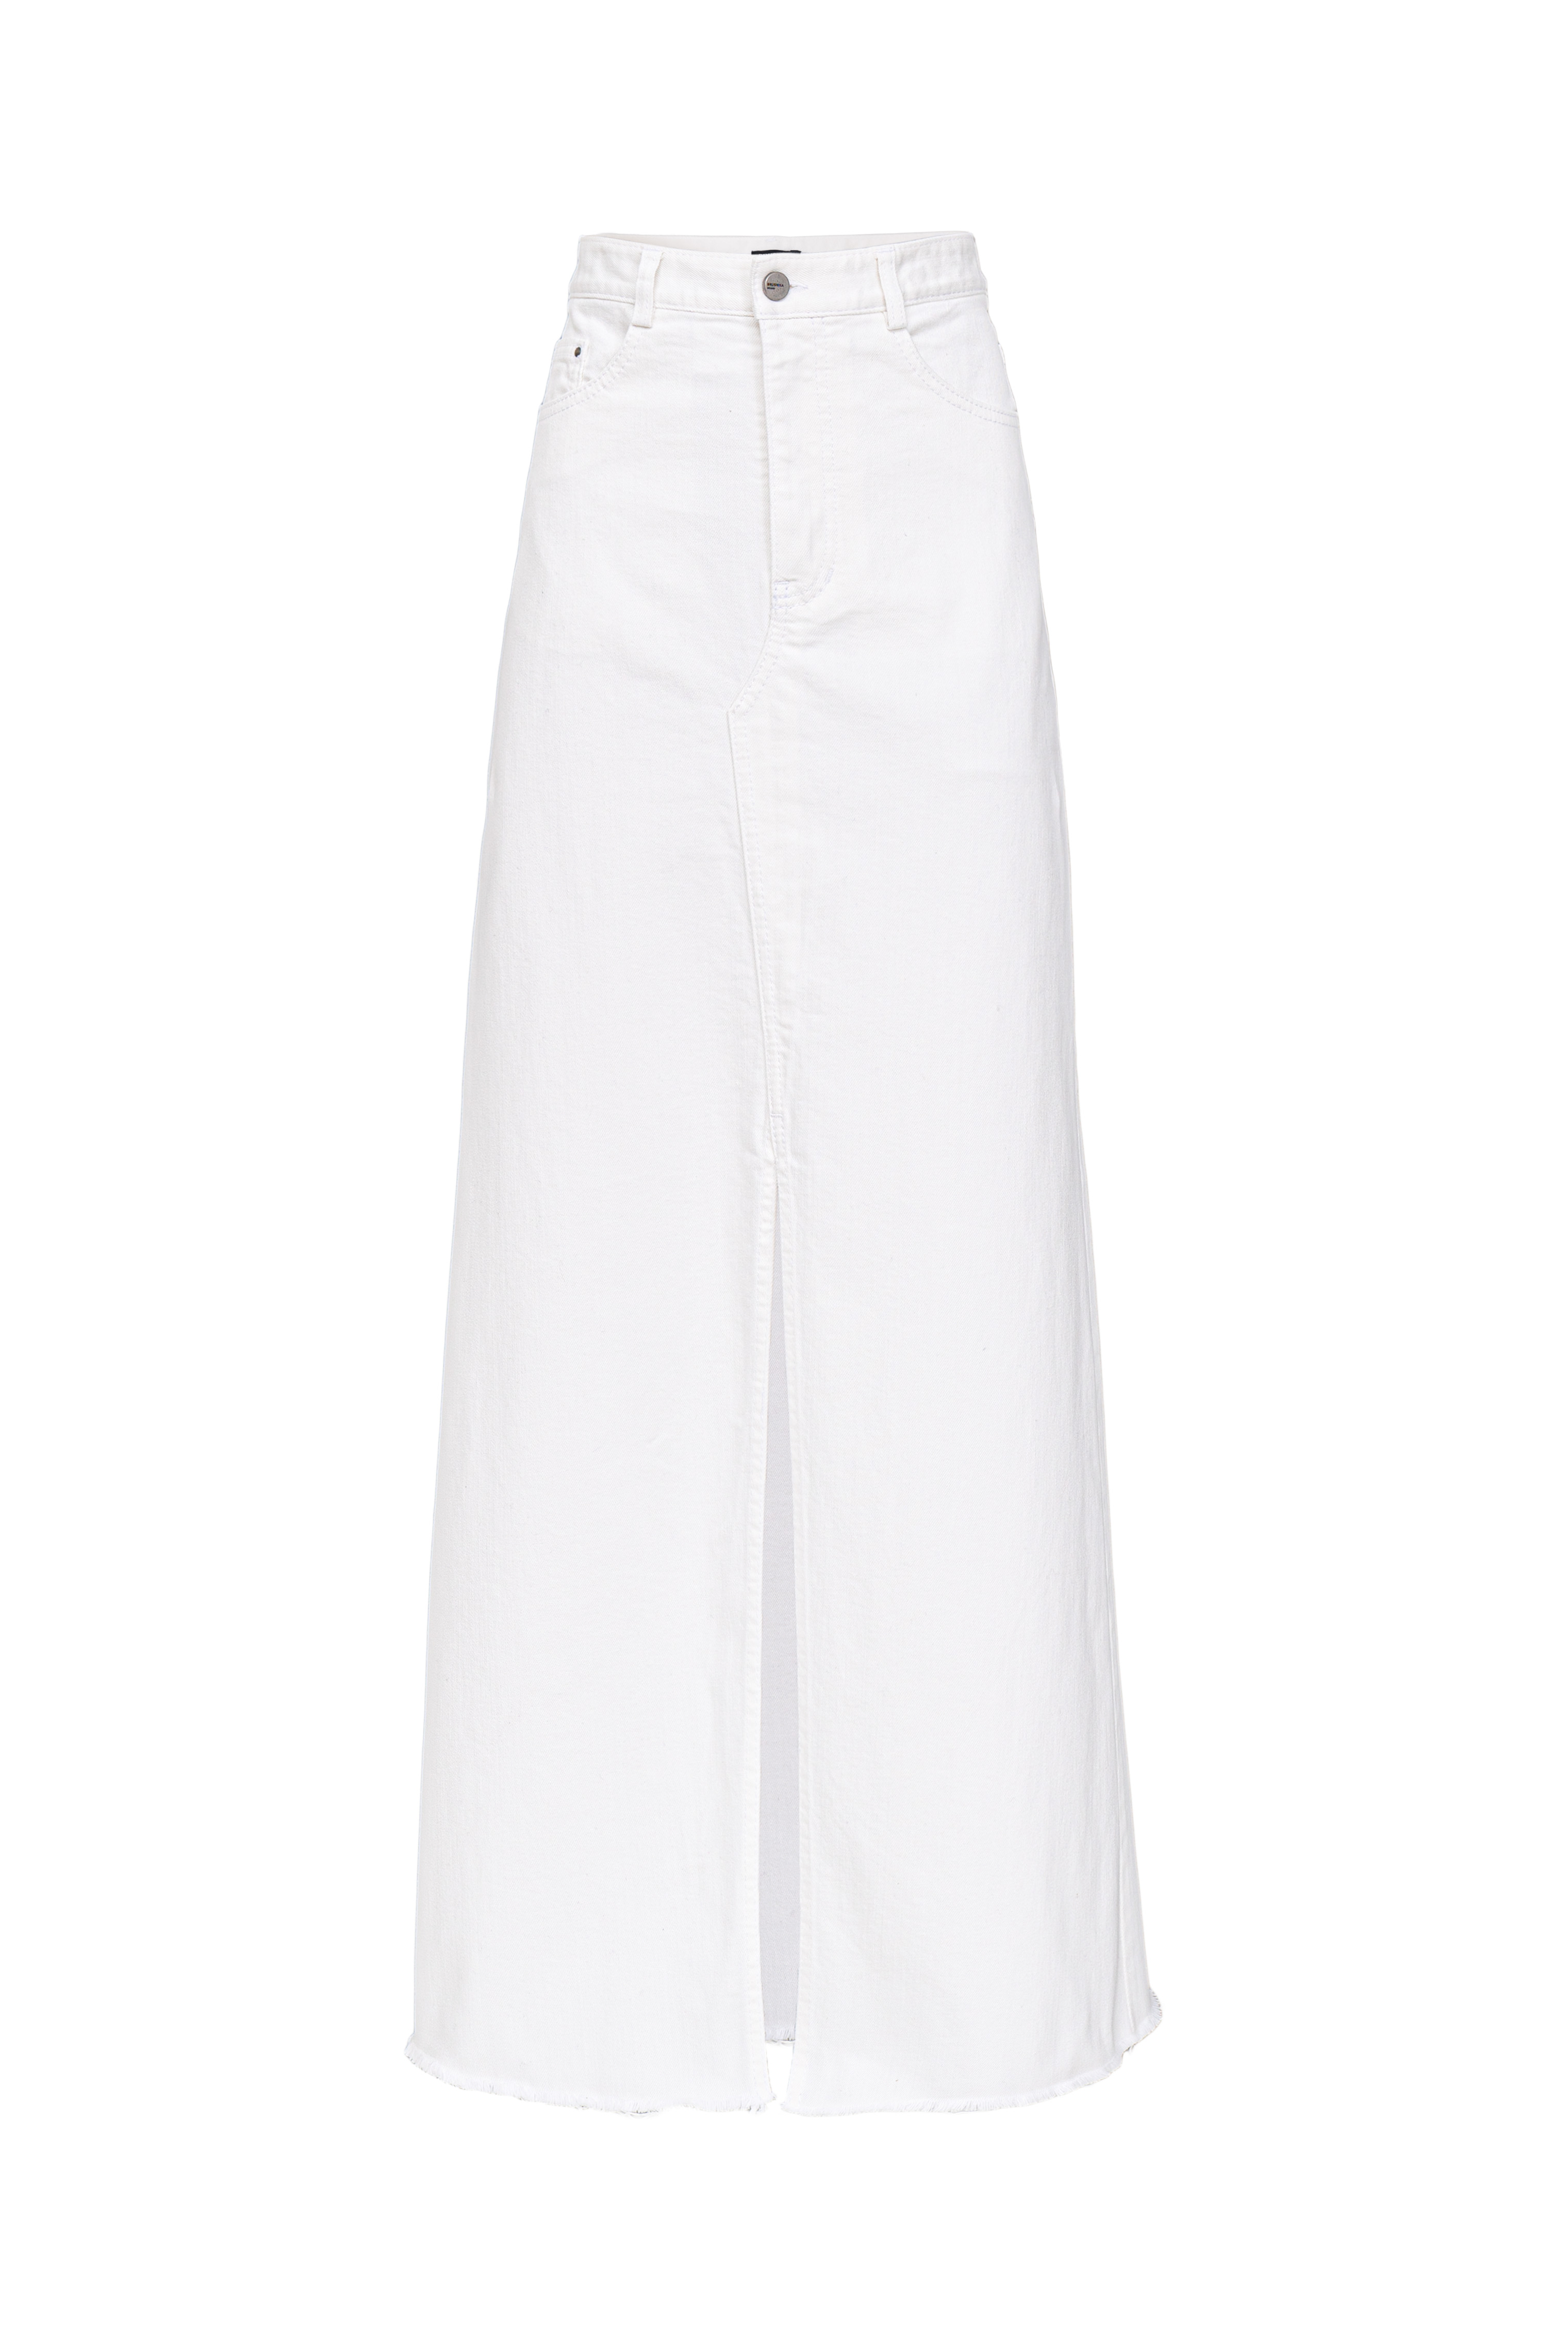 Skirt 4635-02 White from BRUSNiKA